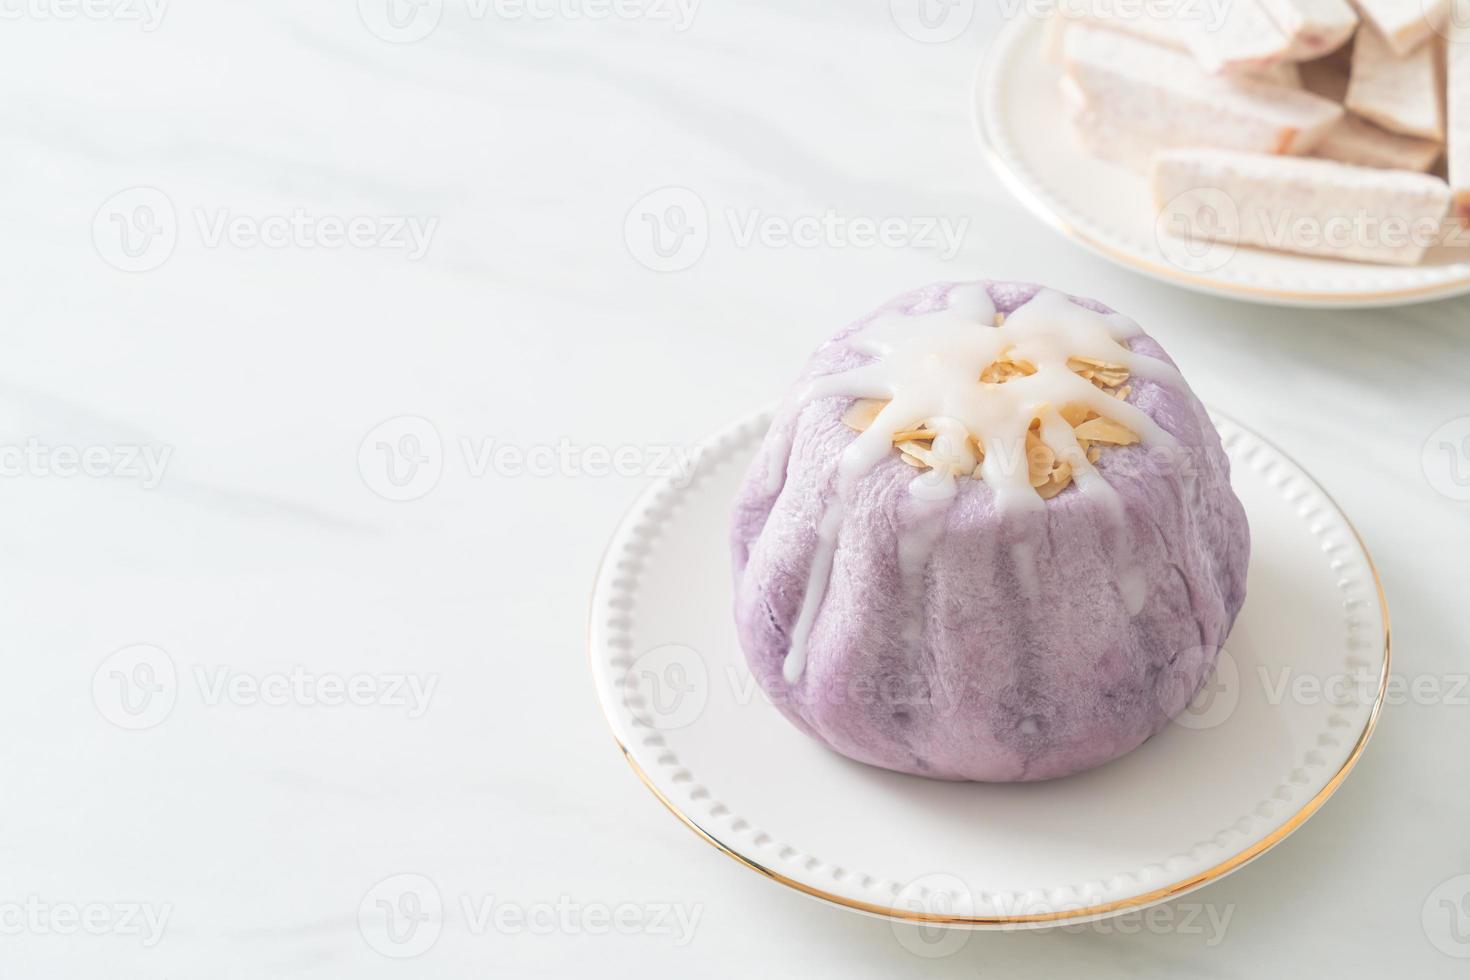 Taro-Brötchen mit weißer Zuckercreme und Nuss foto